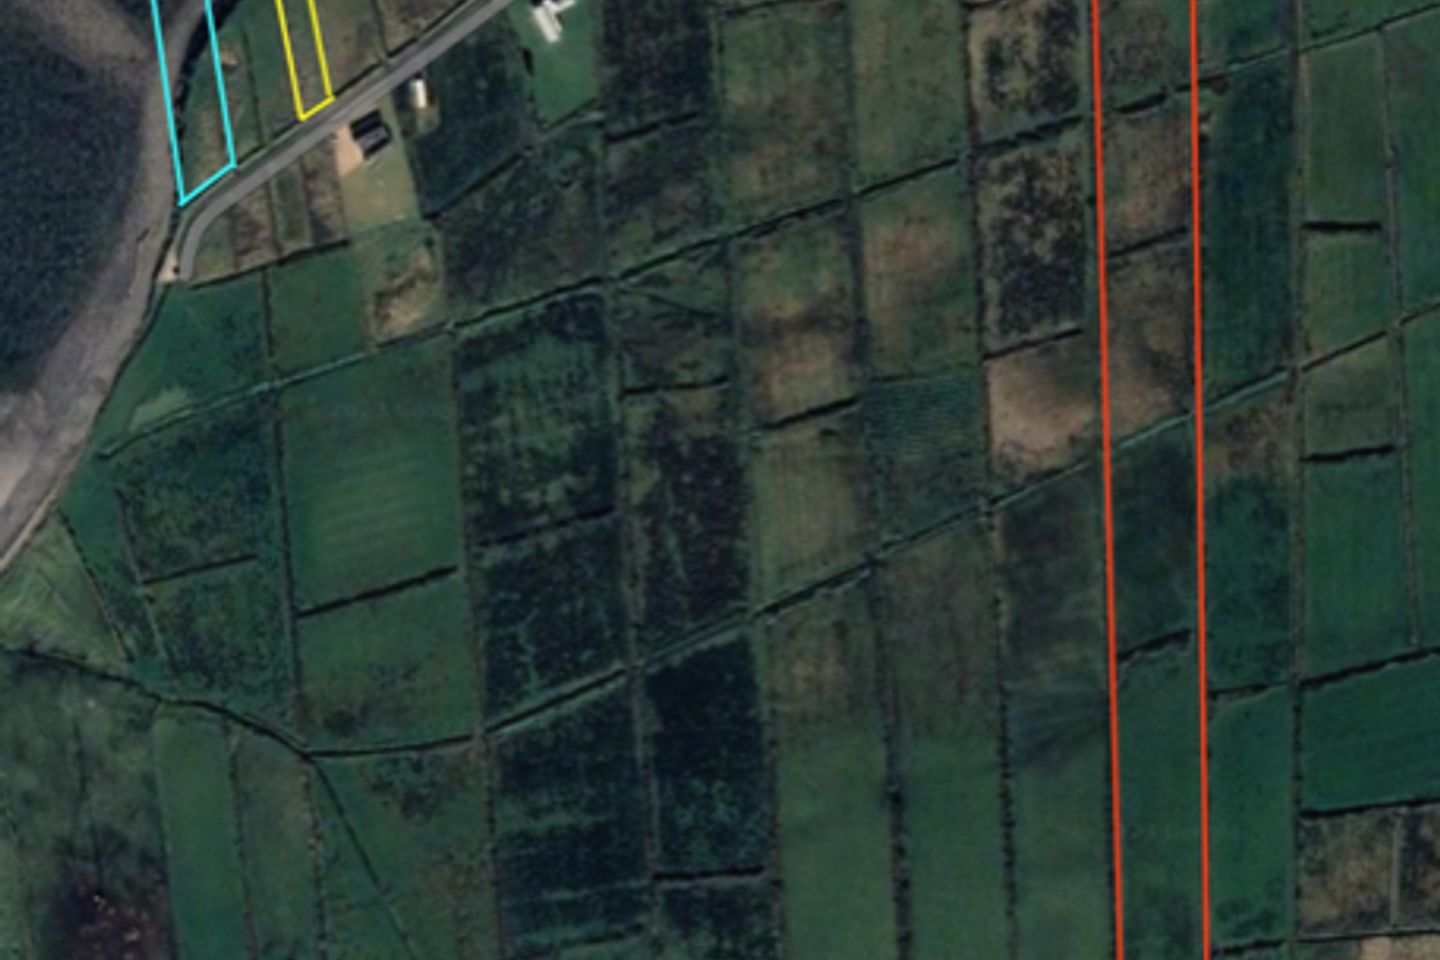 3 Parcels of land at Lislary (8.72 acres, 0.19 acres & 0.14 acres), Sligo, Co. Sligo